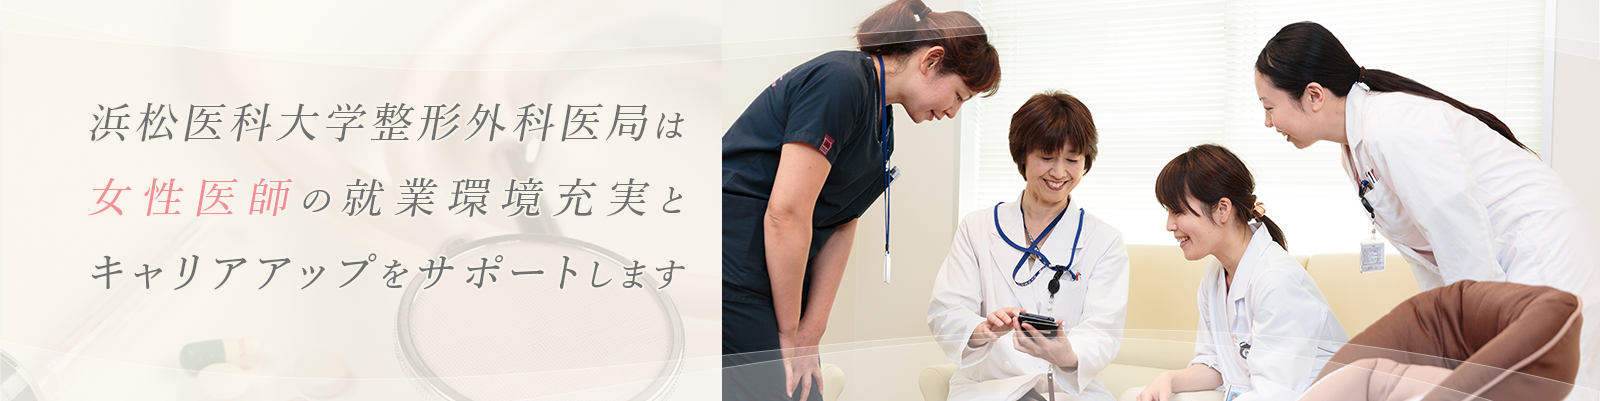 浜松医科大学整形外科医局女性医師の就業環境充実とキャリアアップをサポートします。